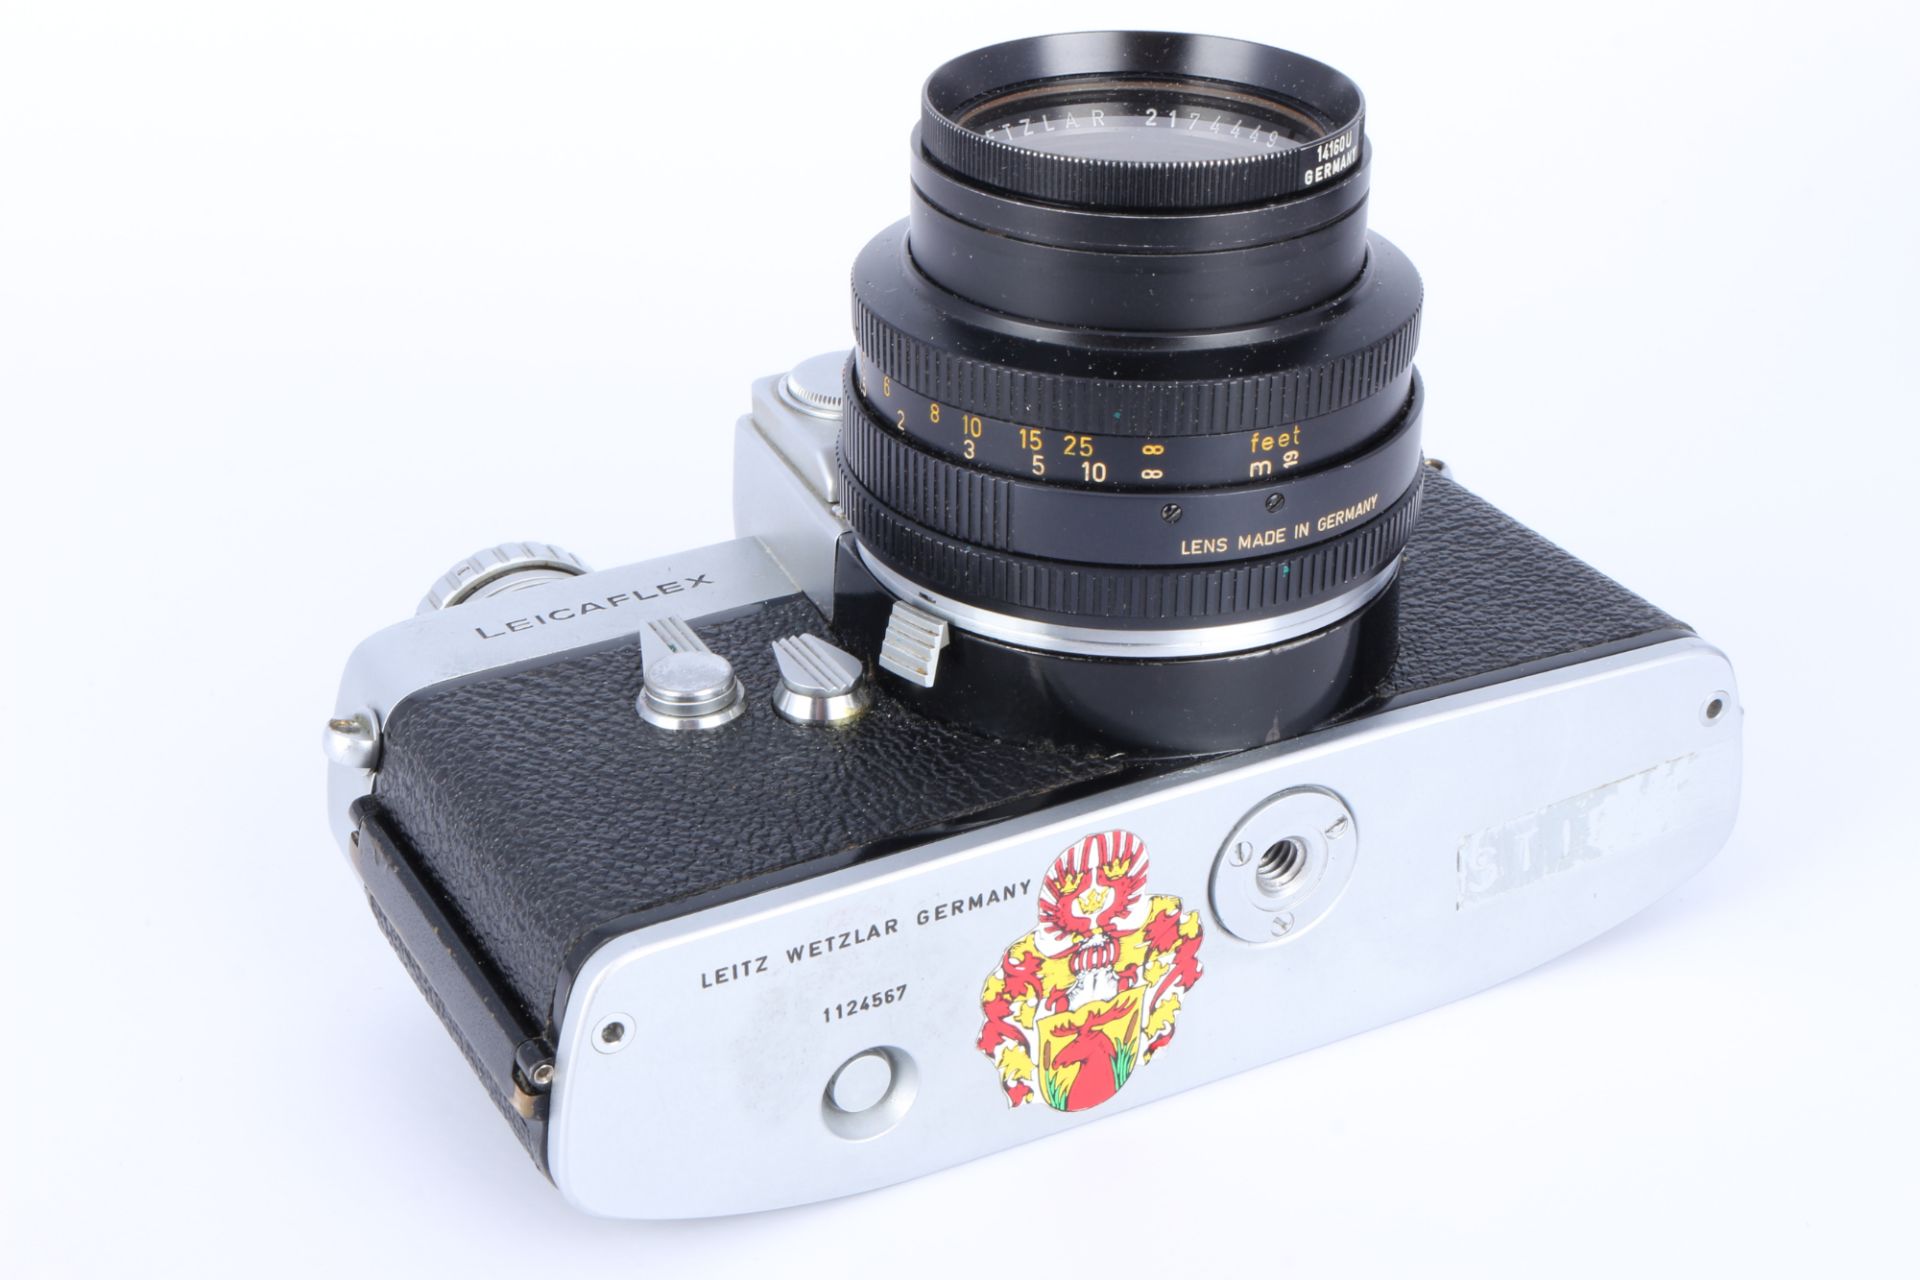 Leicaflex Kamera mit Zubehör, camera with accessories, - Image 3 of 5